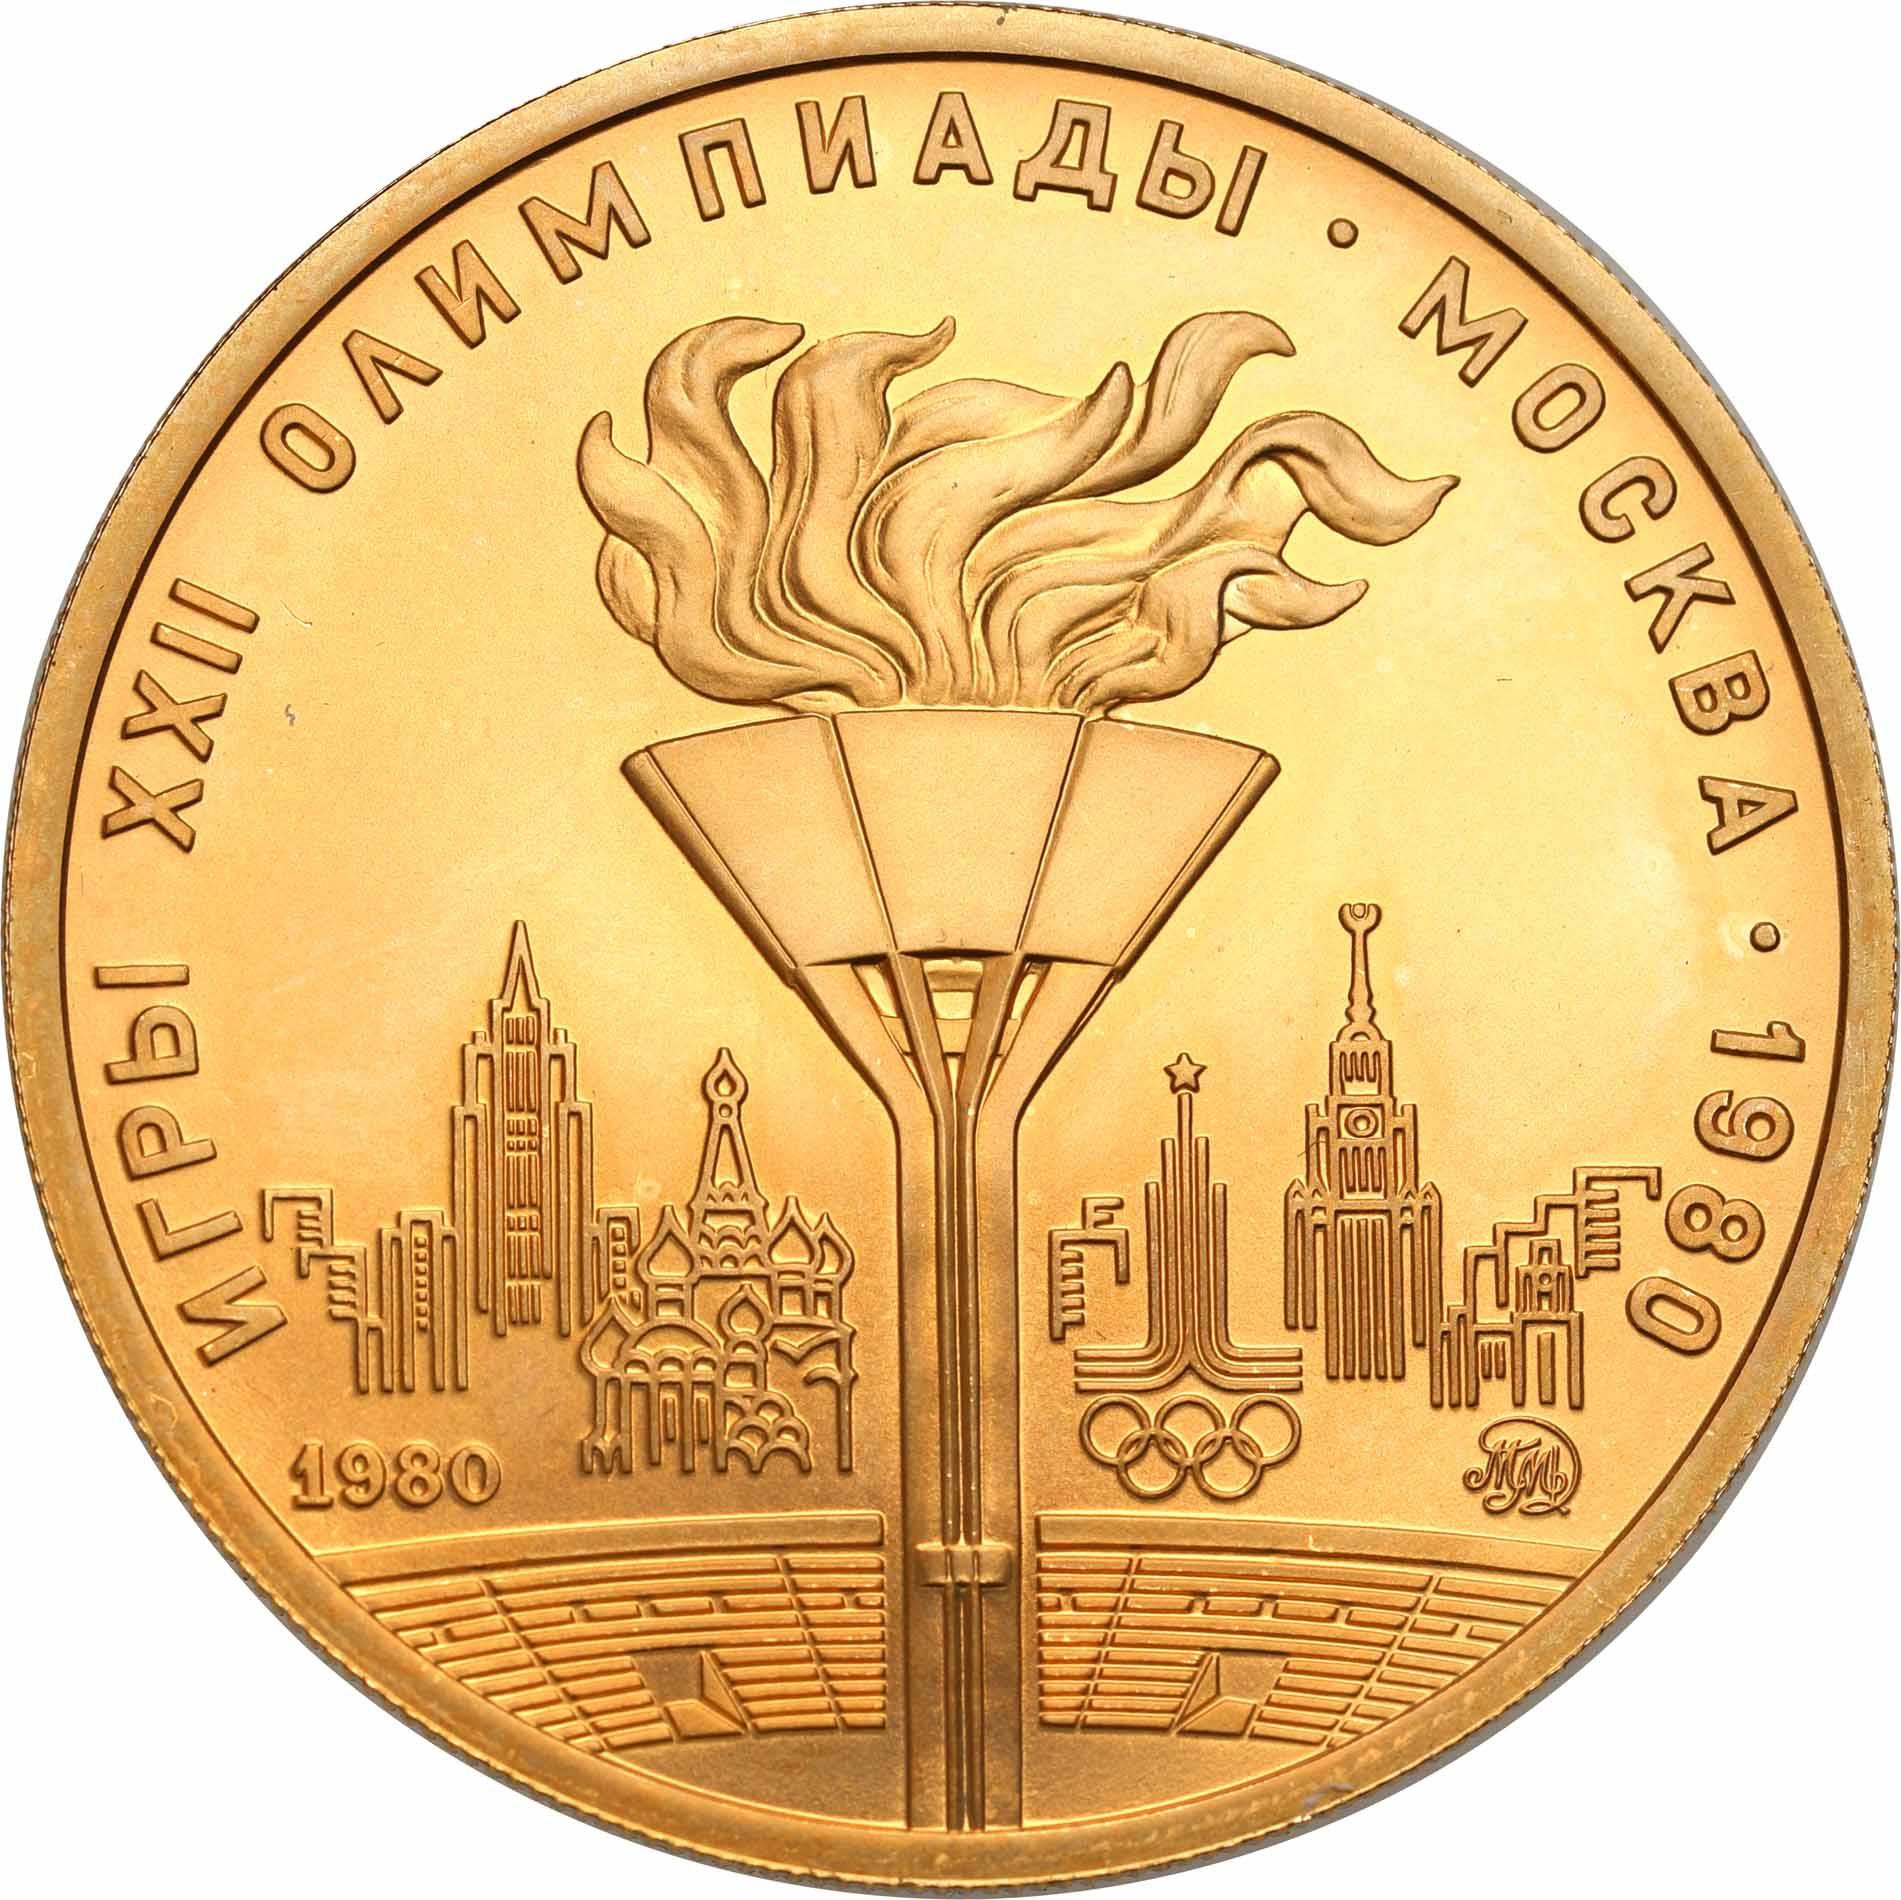 Rosja 100 Rubli 1980 Olimpiada Moskwa ZNICZ najrzadsza - 1/2 uncji złota